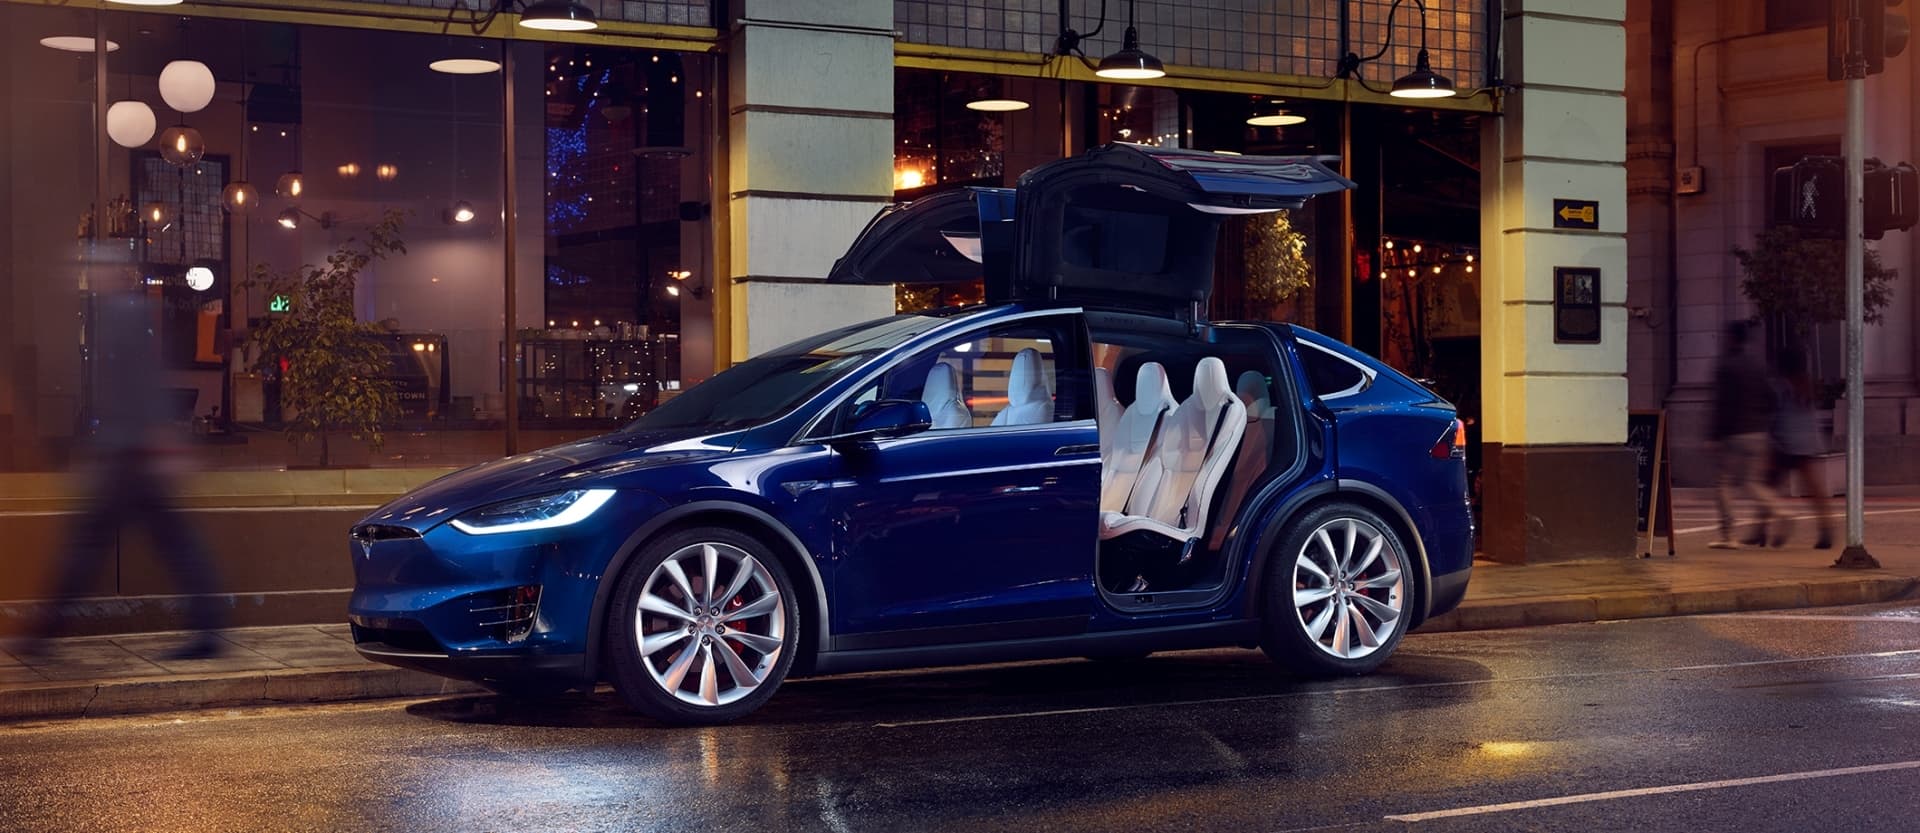 Tesla Model X 21 Precios Y Versiones Caracteristicas Ficha Tecnica Fotos Y Noticias Diariomotor